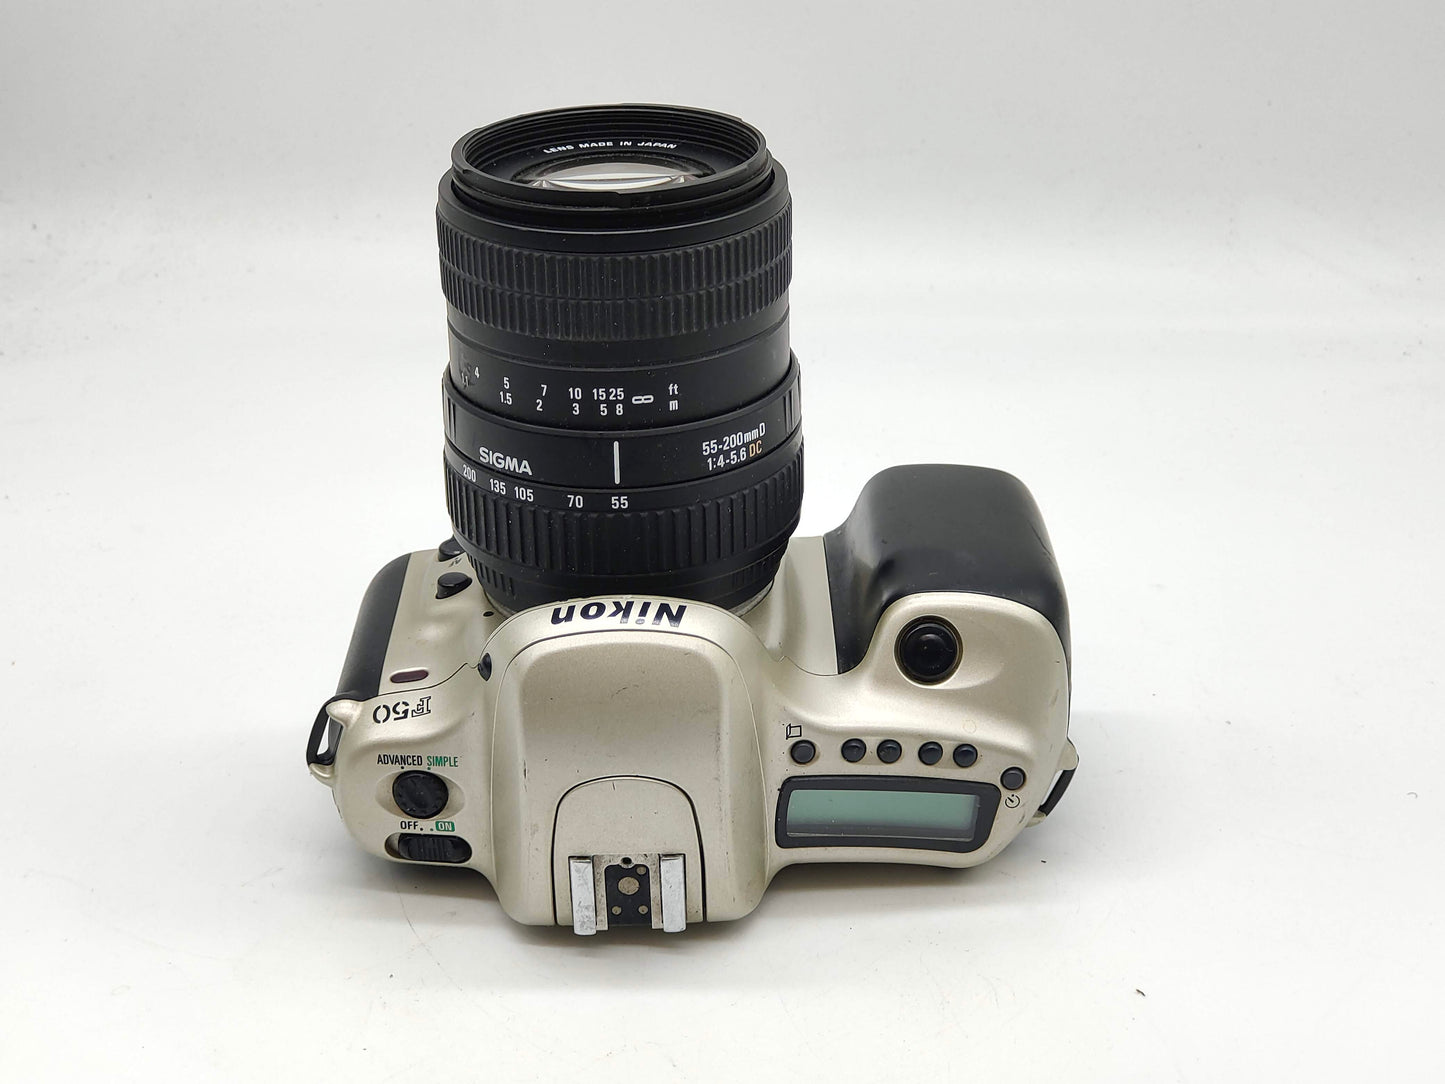 Nikon F50 + zoom lens SLR film camera kit